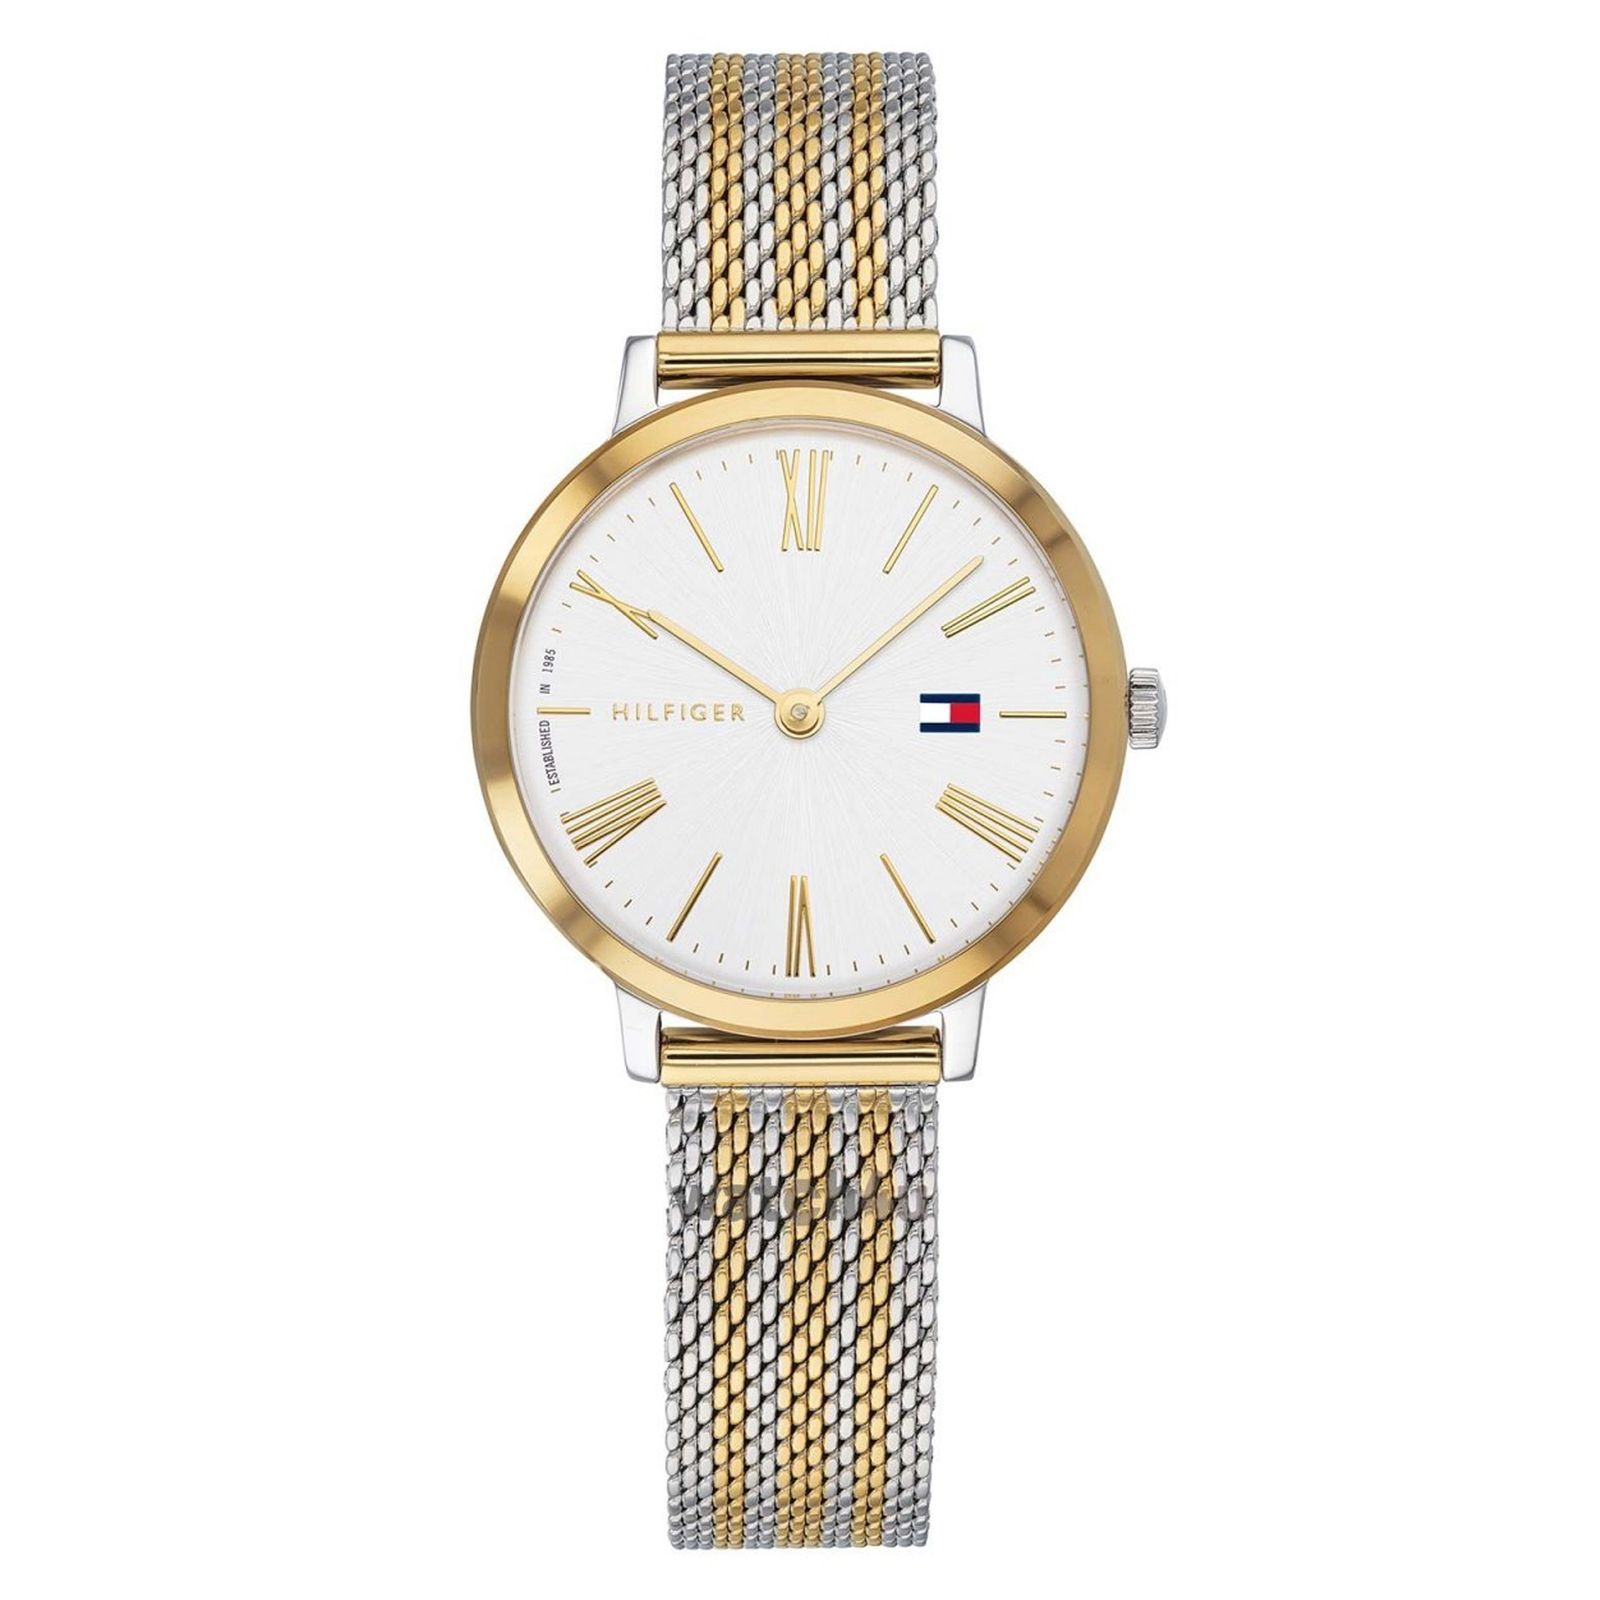 ساعت مچی عقربه ای زنانه تامی هیلفیگر مدل 1782055 - نقره ای طلایی - 1